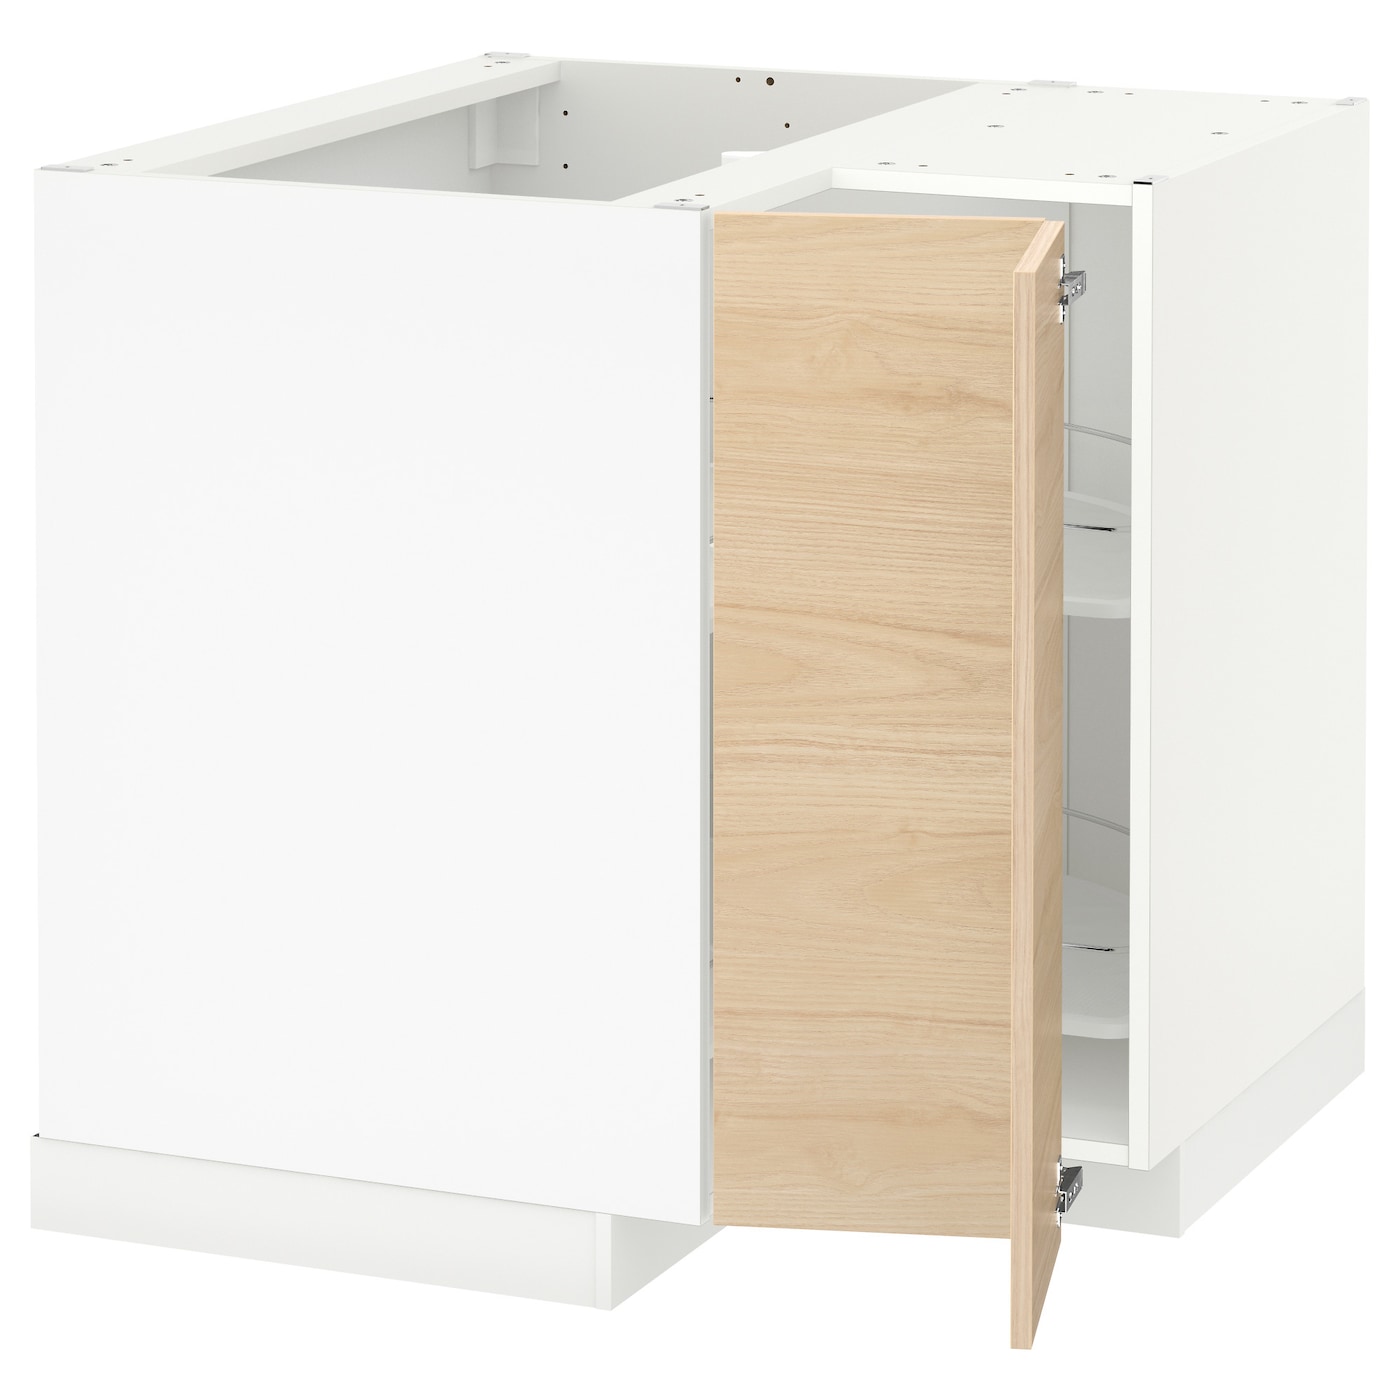 Напольный шкаф - METOD IKEA/ МЕТОД ИКЕА,  88х88 см, белый/под беленый дуб